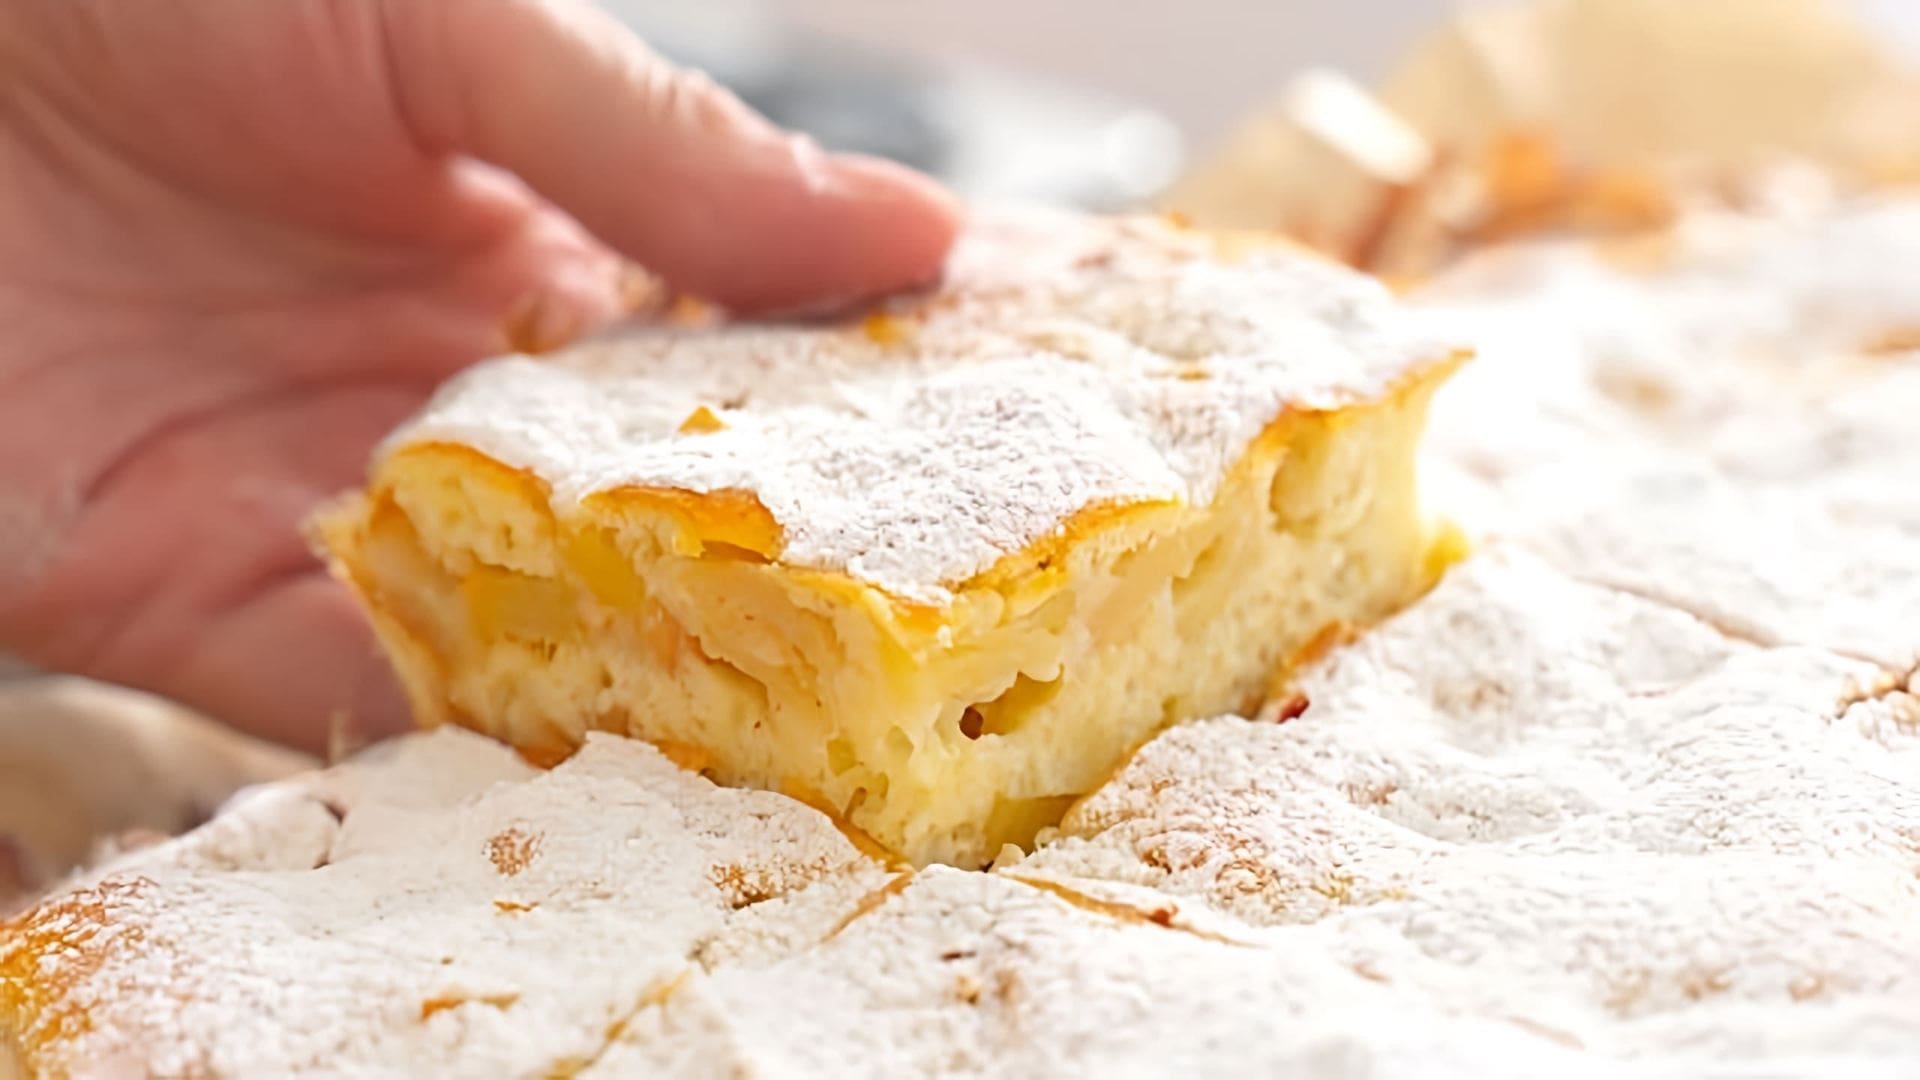 В этом видео демонстрируется рецепт приготовления яблочного пирога